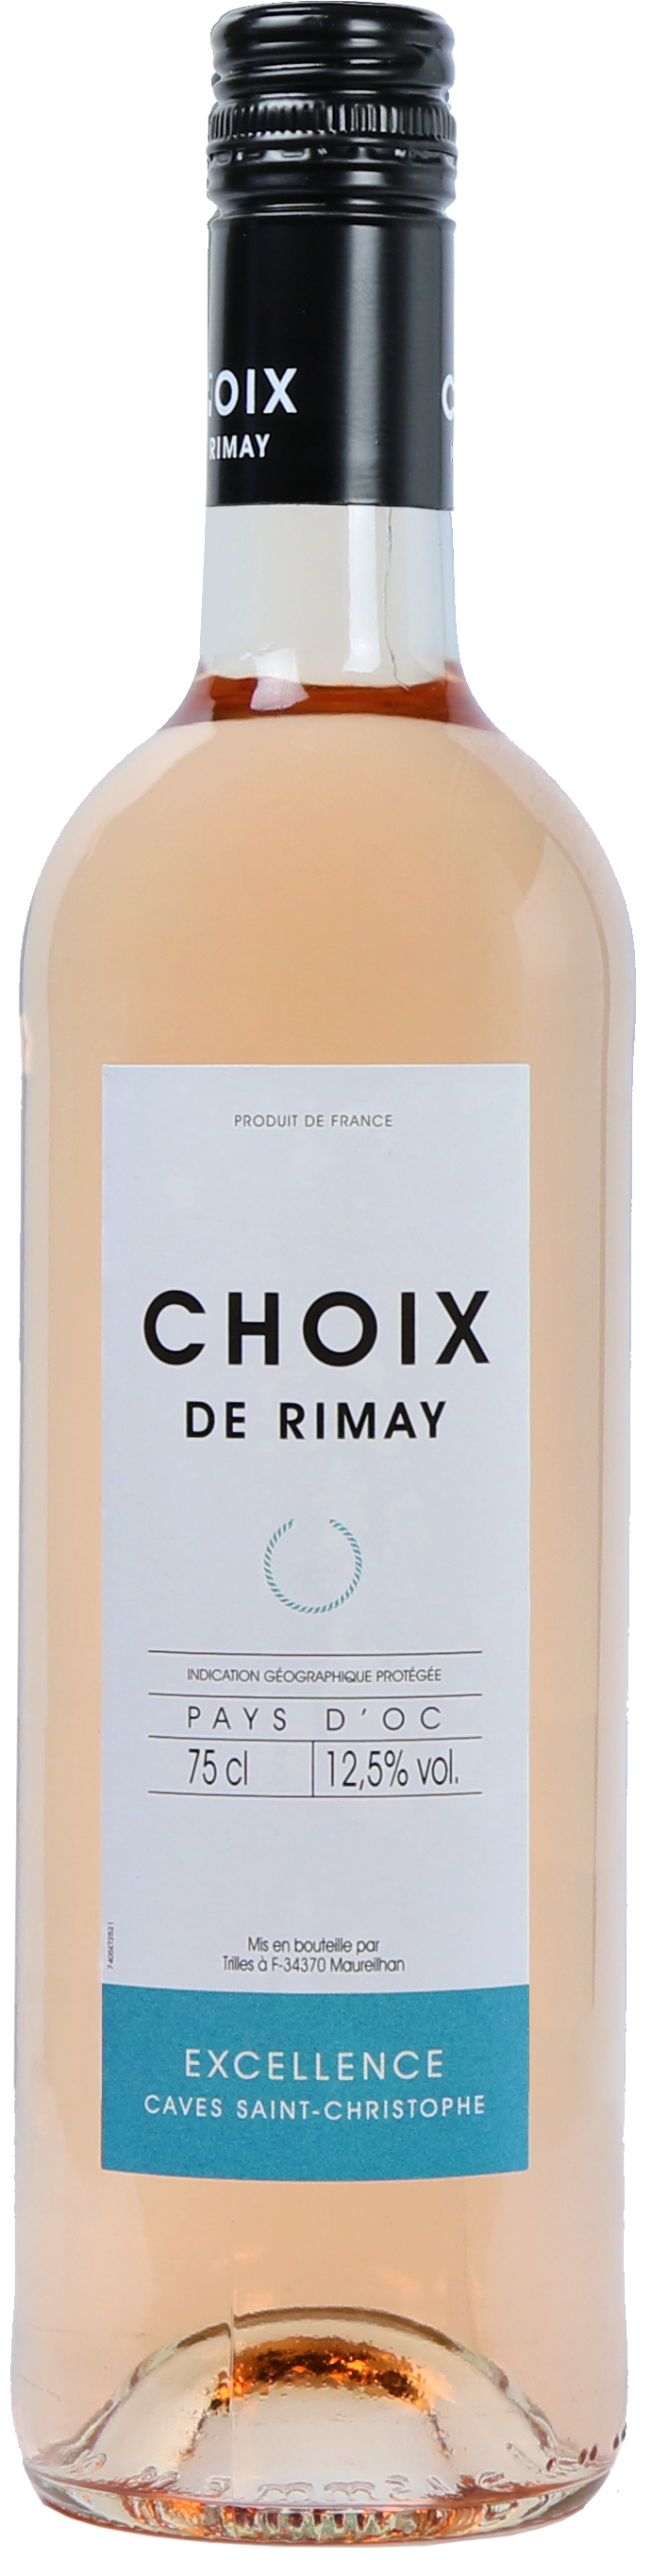 Choix de Rimay rosé